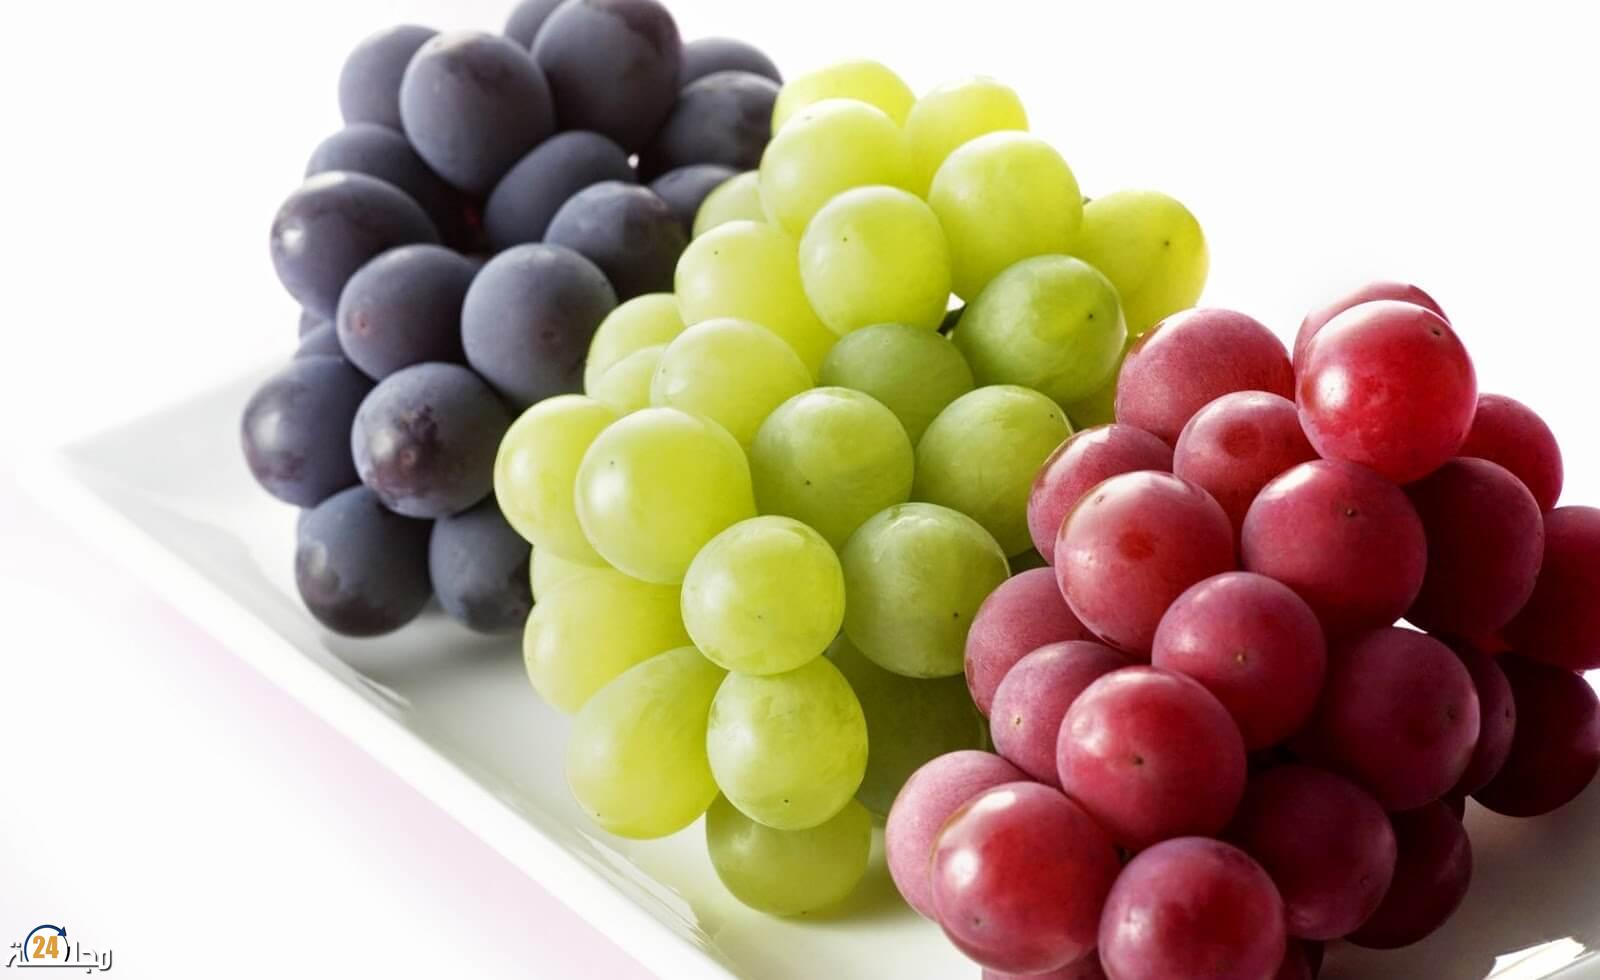 فوائد العنب على صحة الجسم